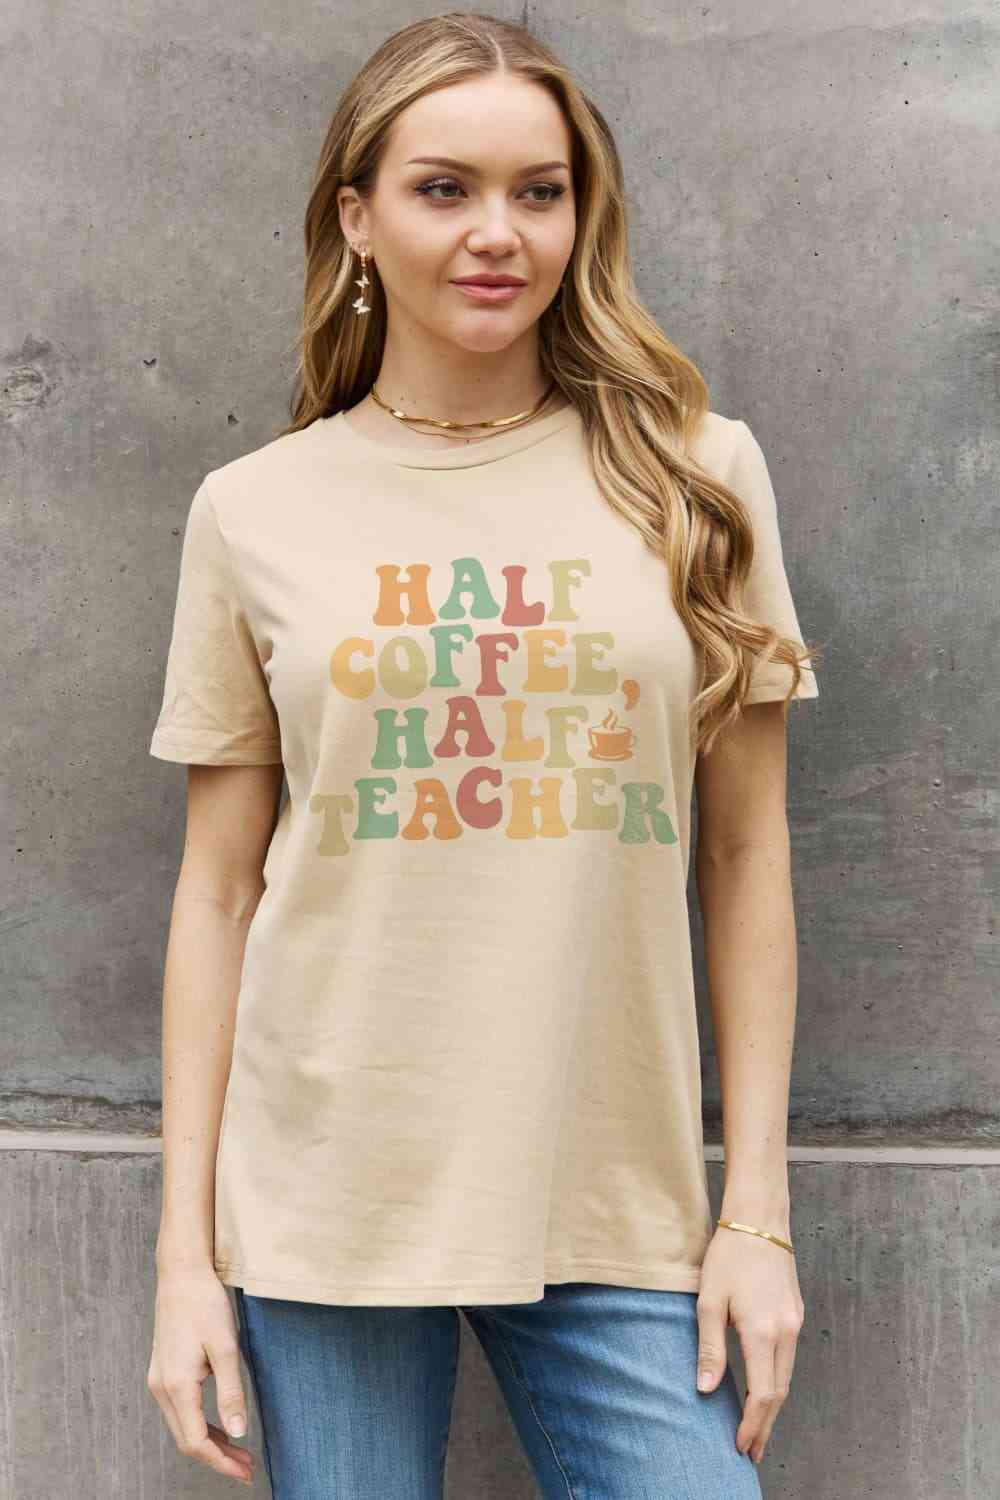 Camiseta de algodón con estampado HALF COFFEE HALF TEACHER de tamaño completo de Simply Love